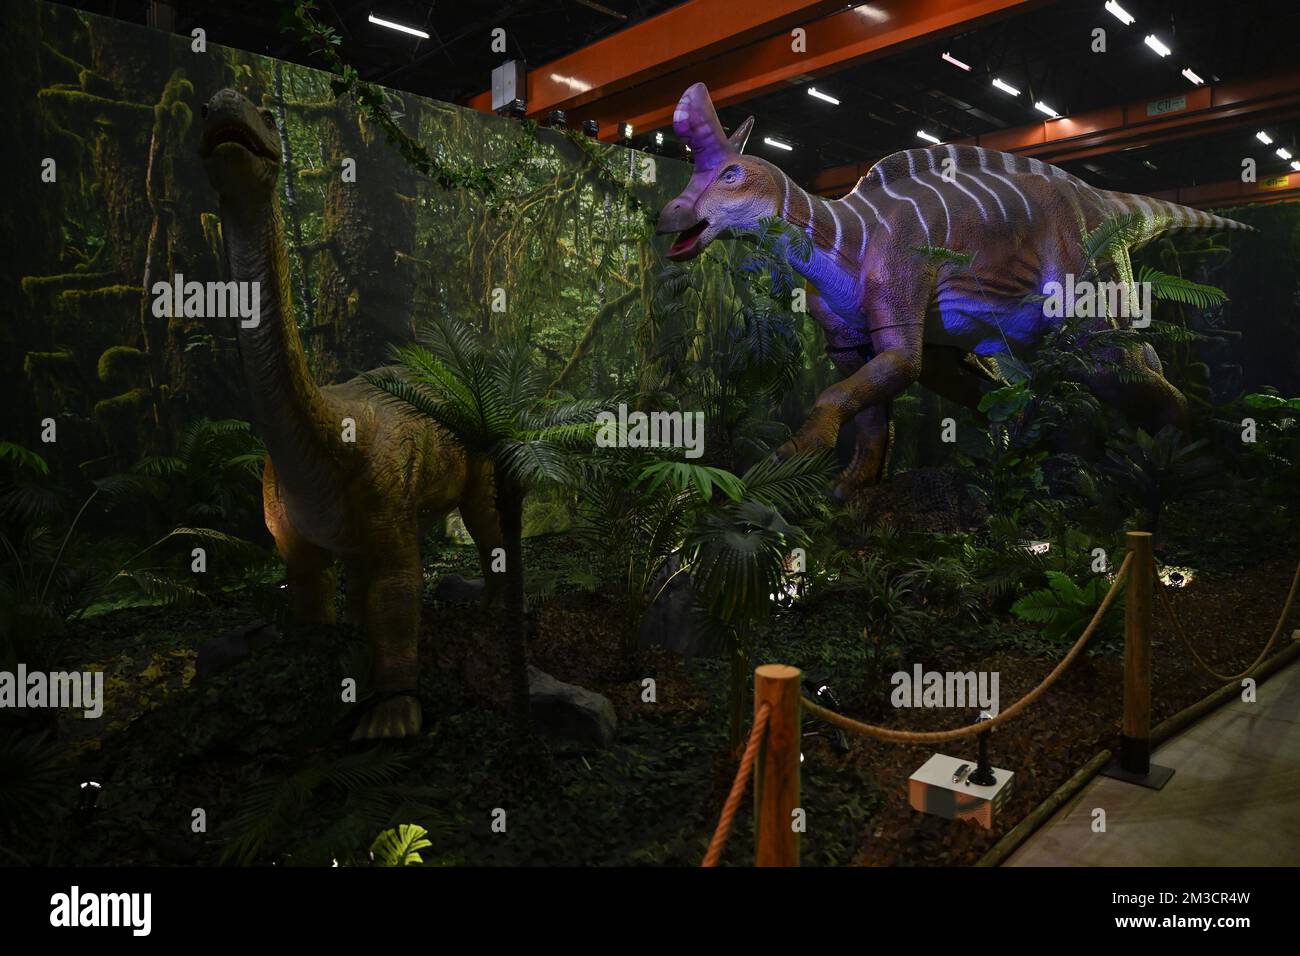 L'illustration montre la construction de l'exposition « Expo Dino » sur les dinosaures sur l'ancien site Caterpillar de Charleroi le mercredi 28 septembre 2022. BELGA PHOTO LAURIE DIEFFEMBACQ Banque D'Images